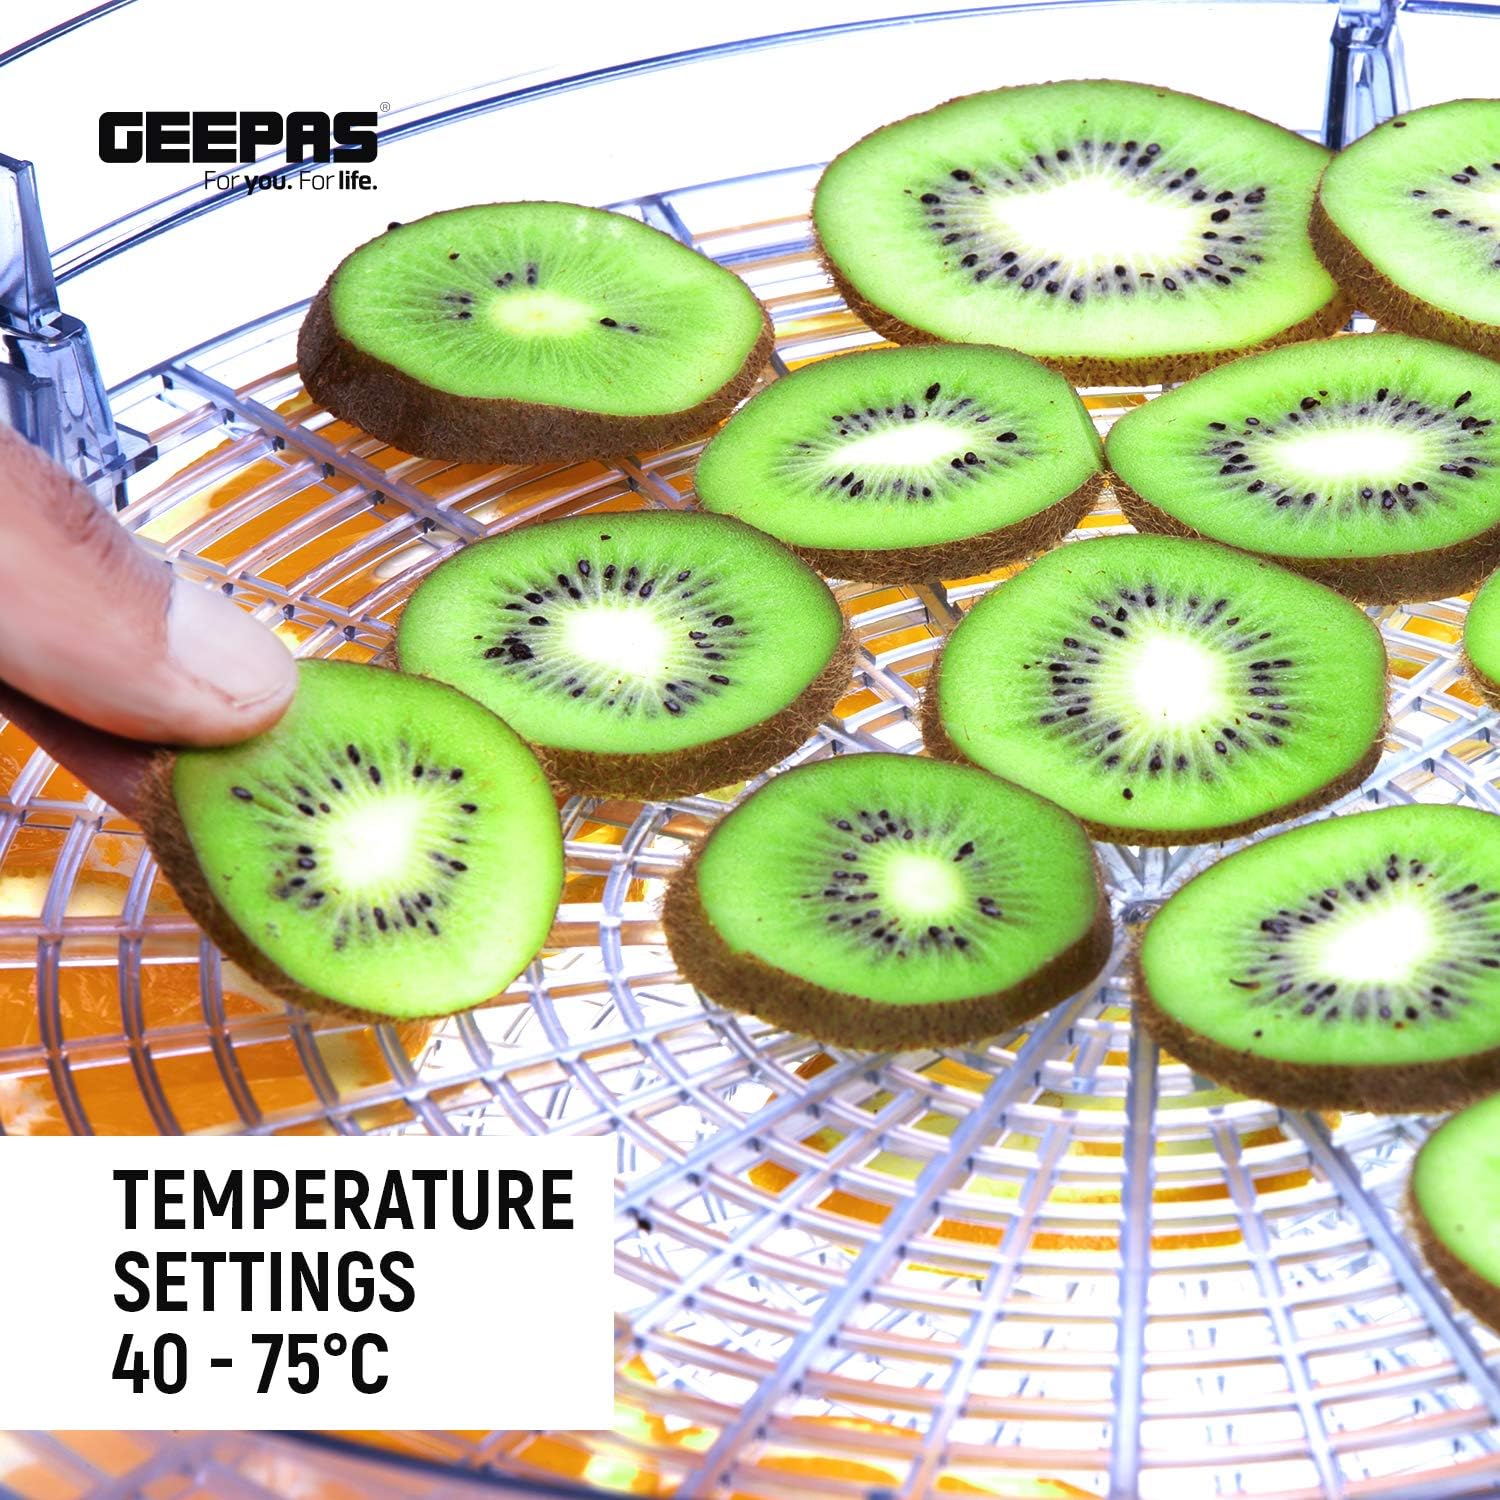 میوه خشک کن جیپاس مدل Geepas GFD63013UK - ارسال 10 الی ۱۵ روز کاری